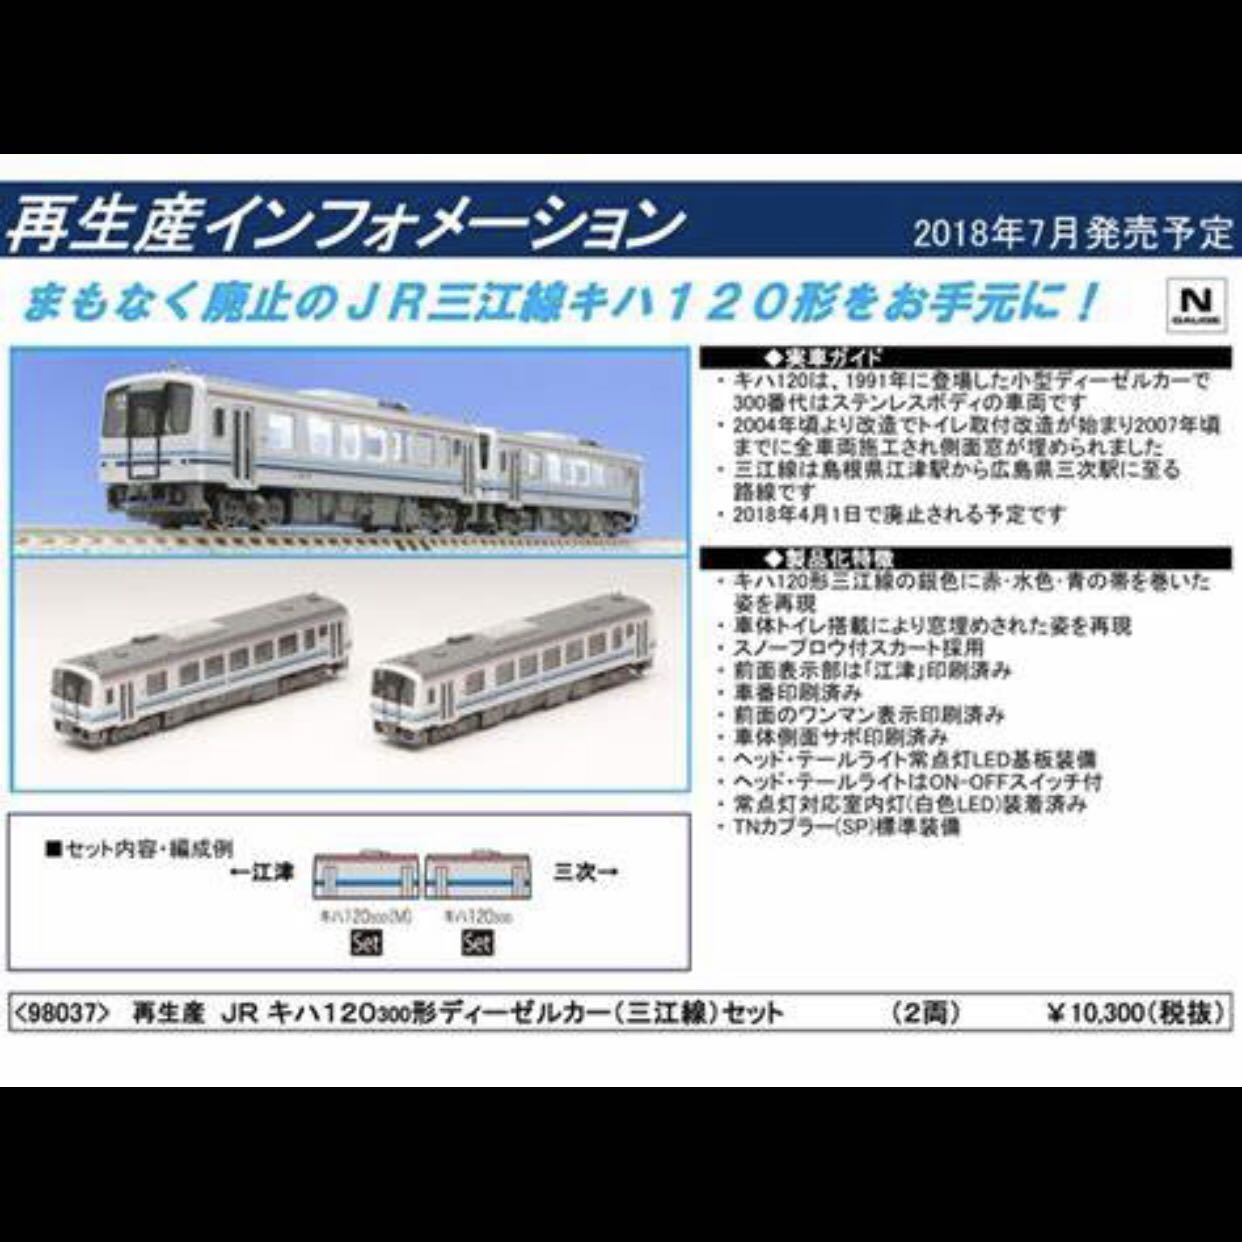 全新現貨N-Gauge TOMIX 98037 JR Diesel Train Type Kiha 120 300 